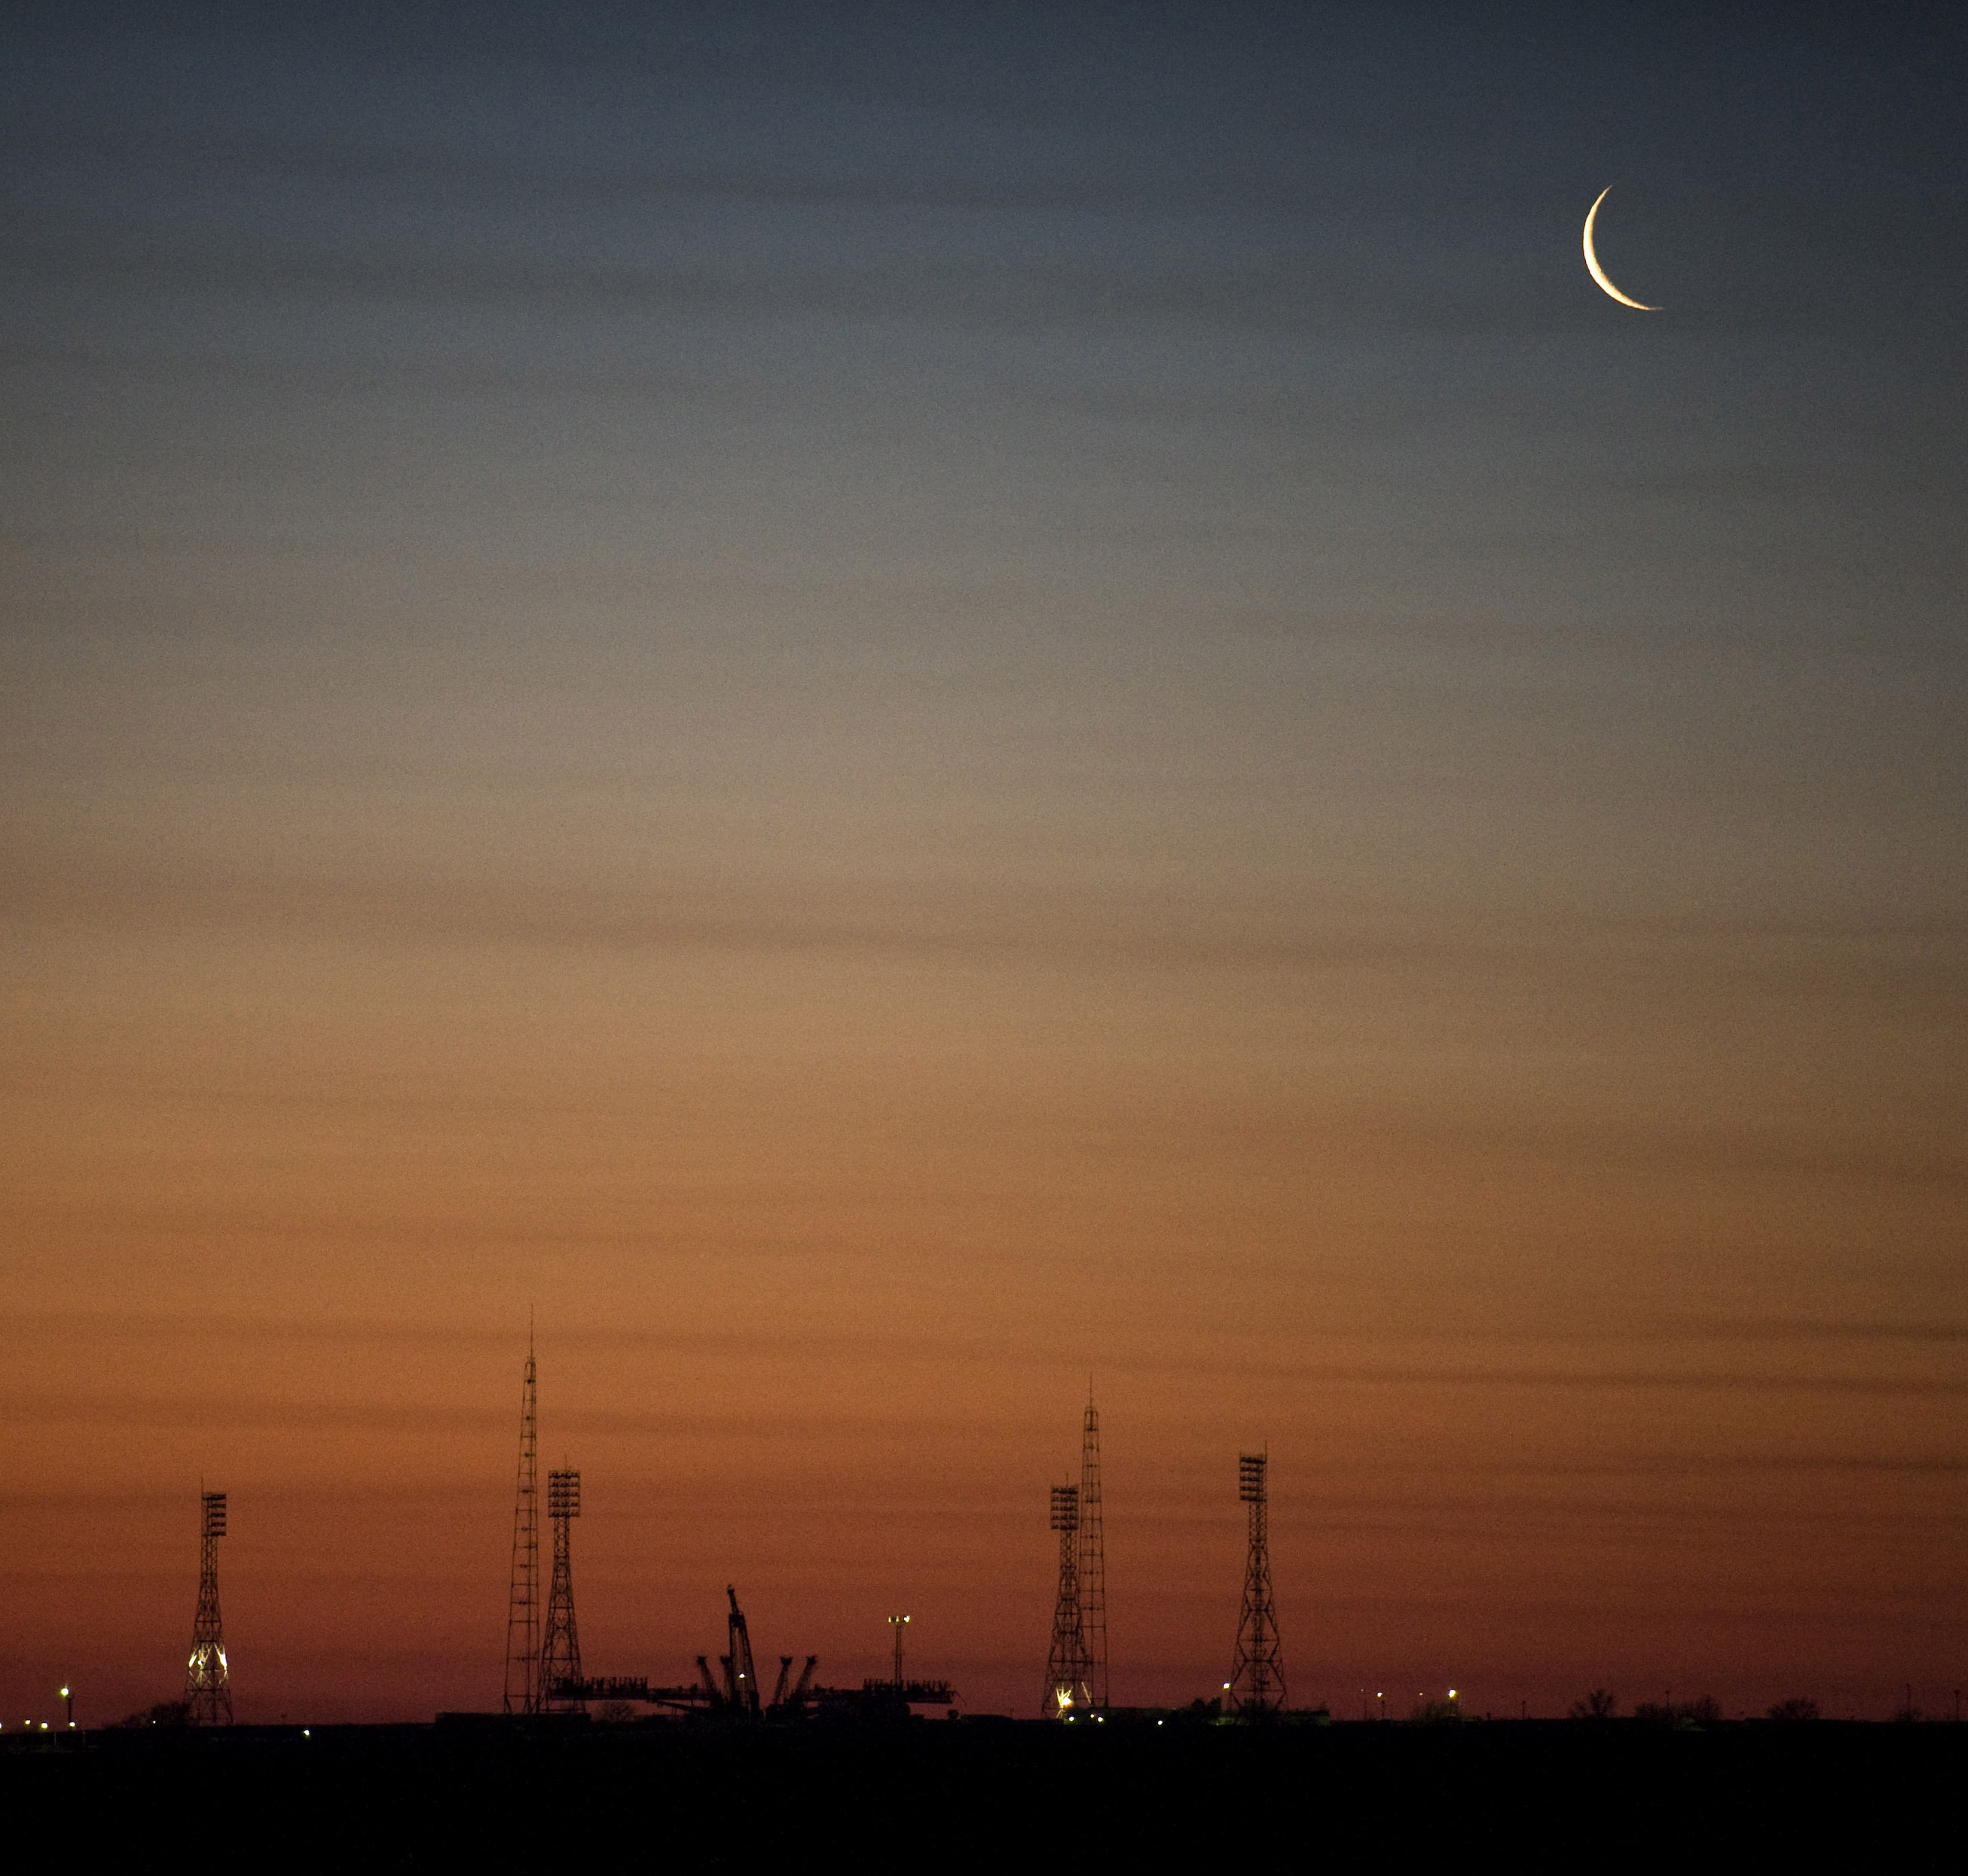 Baikonur cosmodrome at dawn